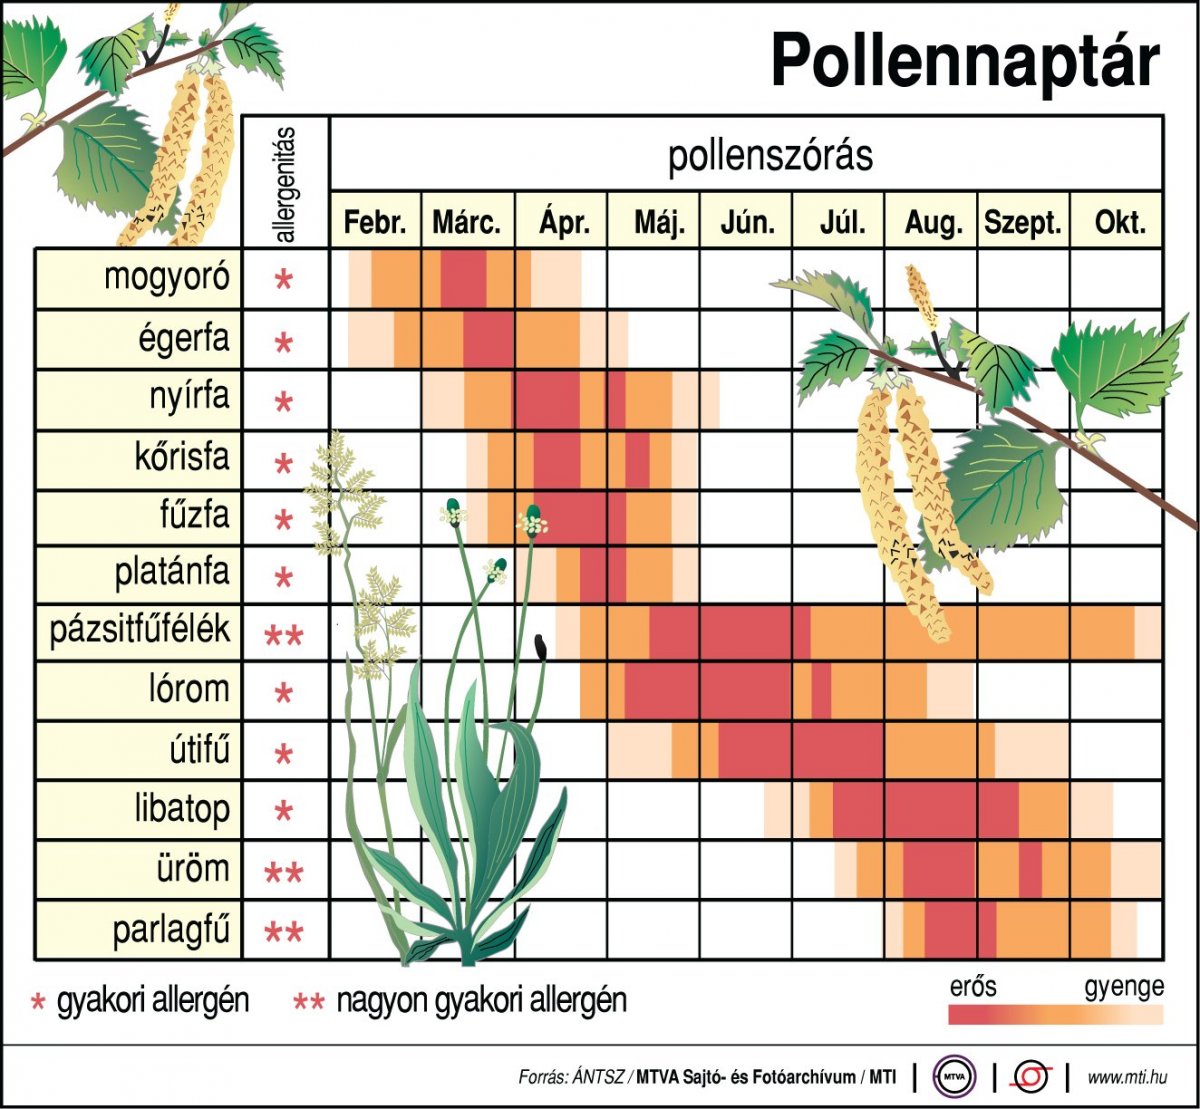 Íme egy összesítő infografika, hogy mikor milyen allergén növénytől kell tartani